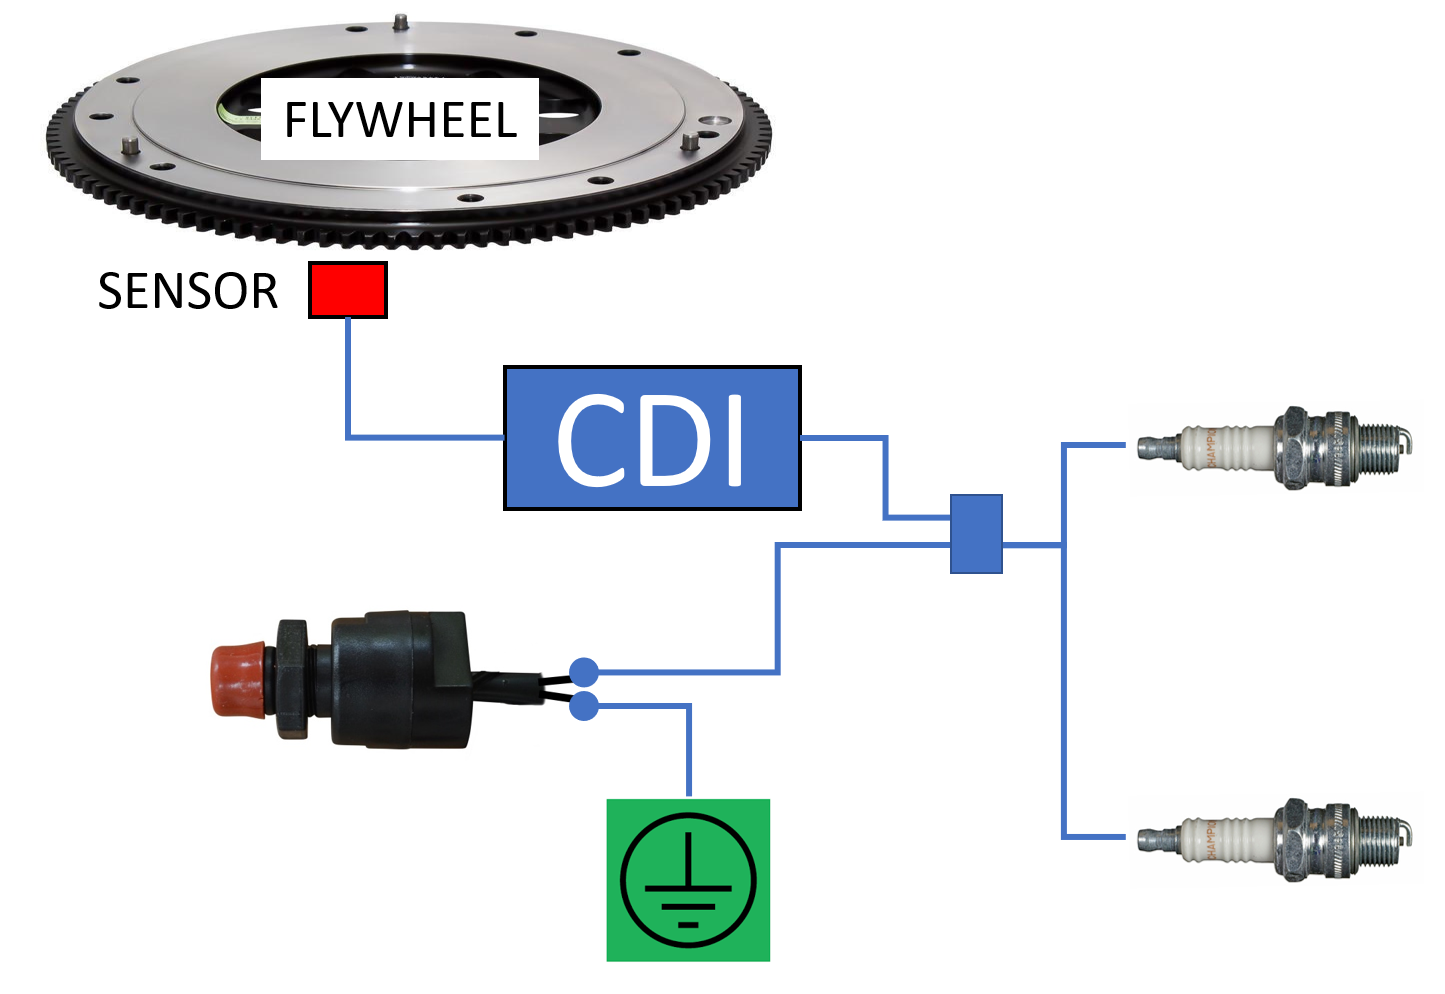 kill-switch wiring diagram